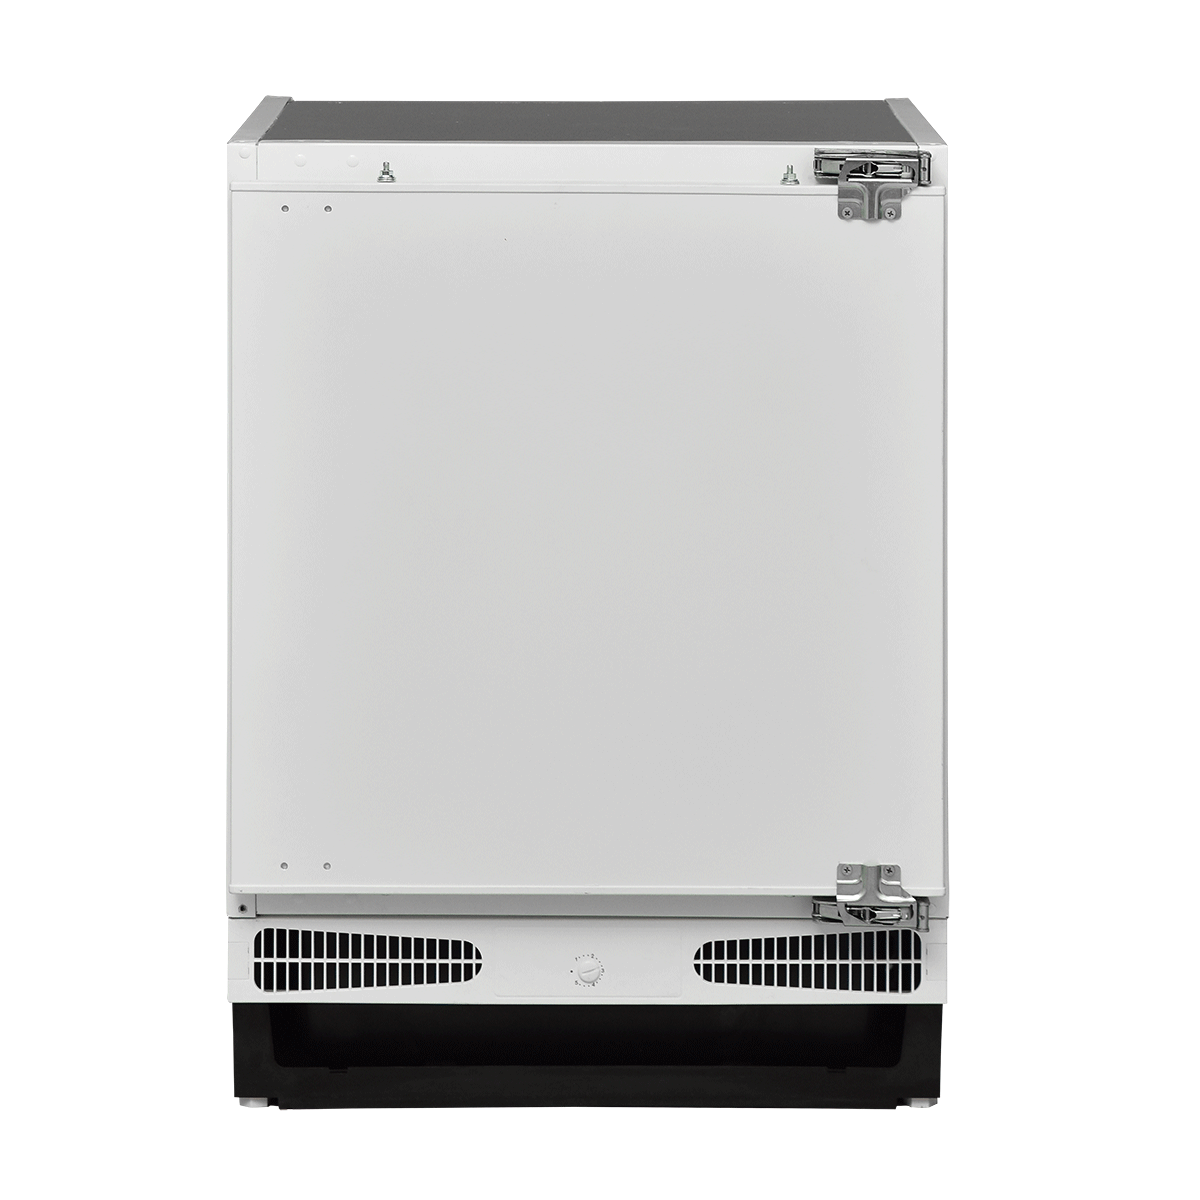 Built-in refrigerator IKS 1600 F 